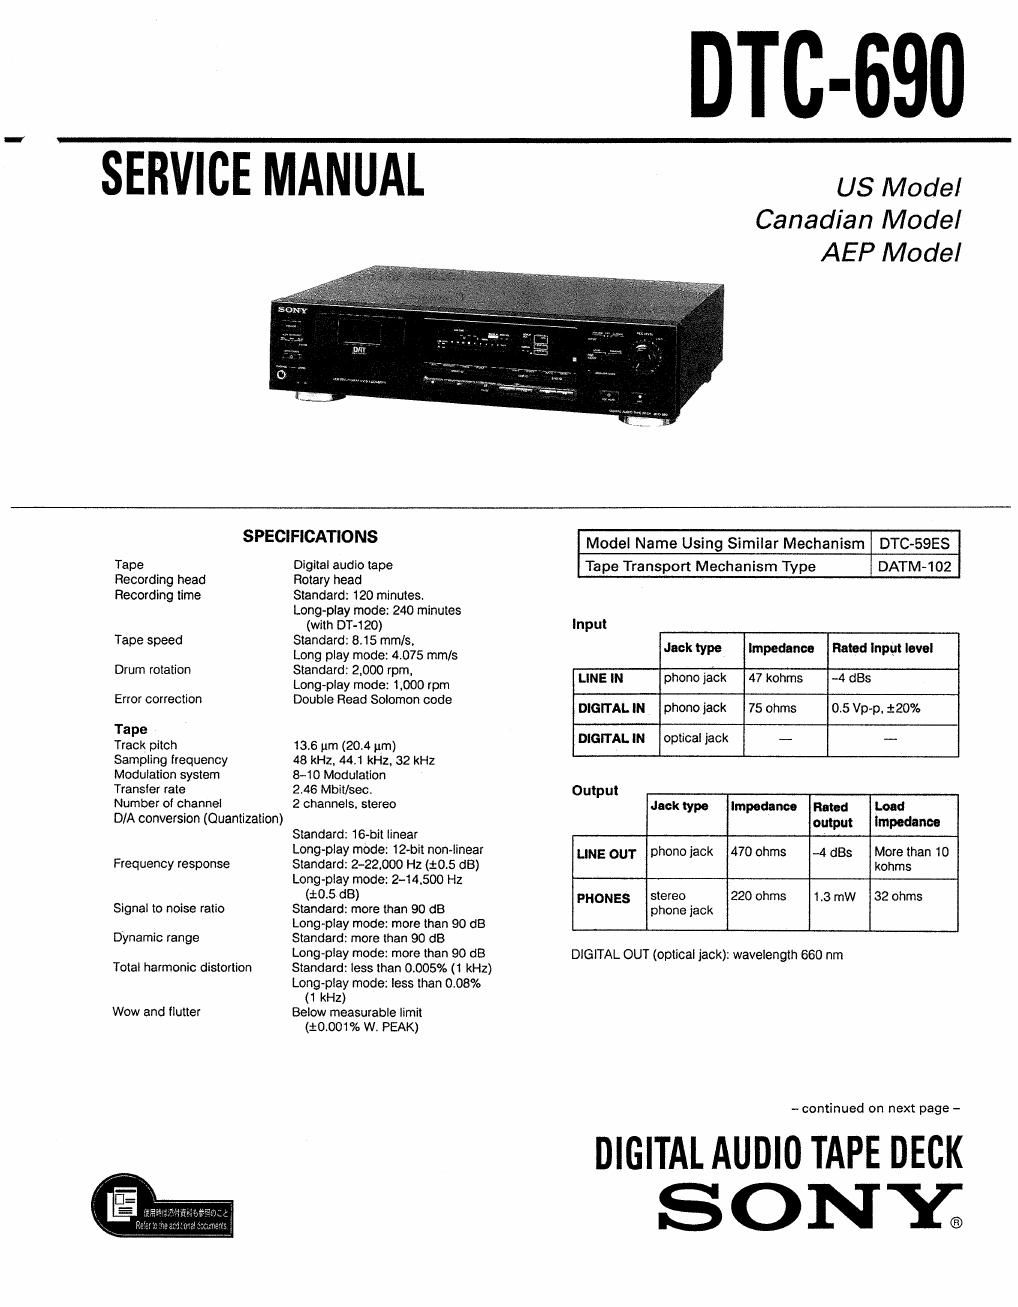 sony dtc 690 service manual